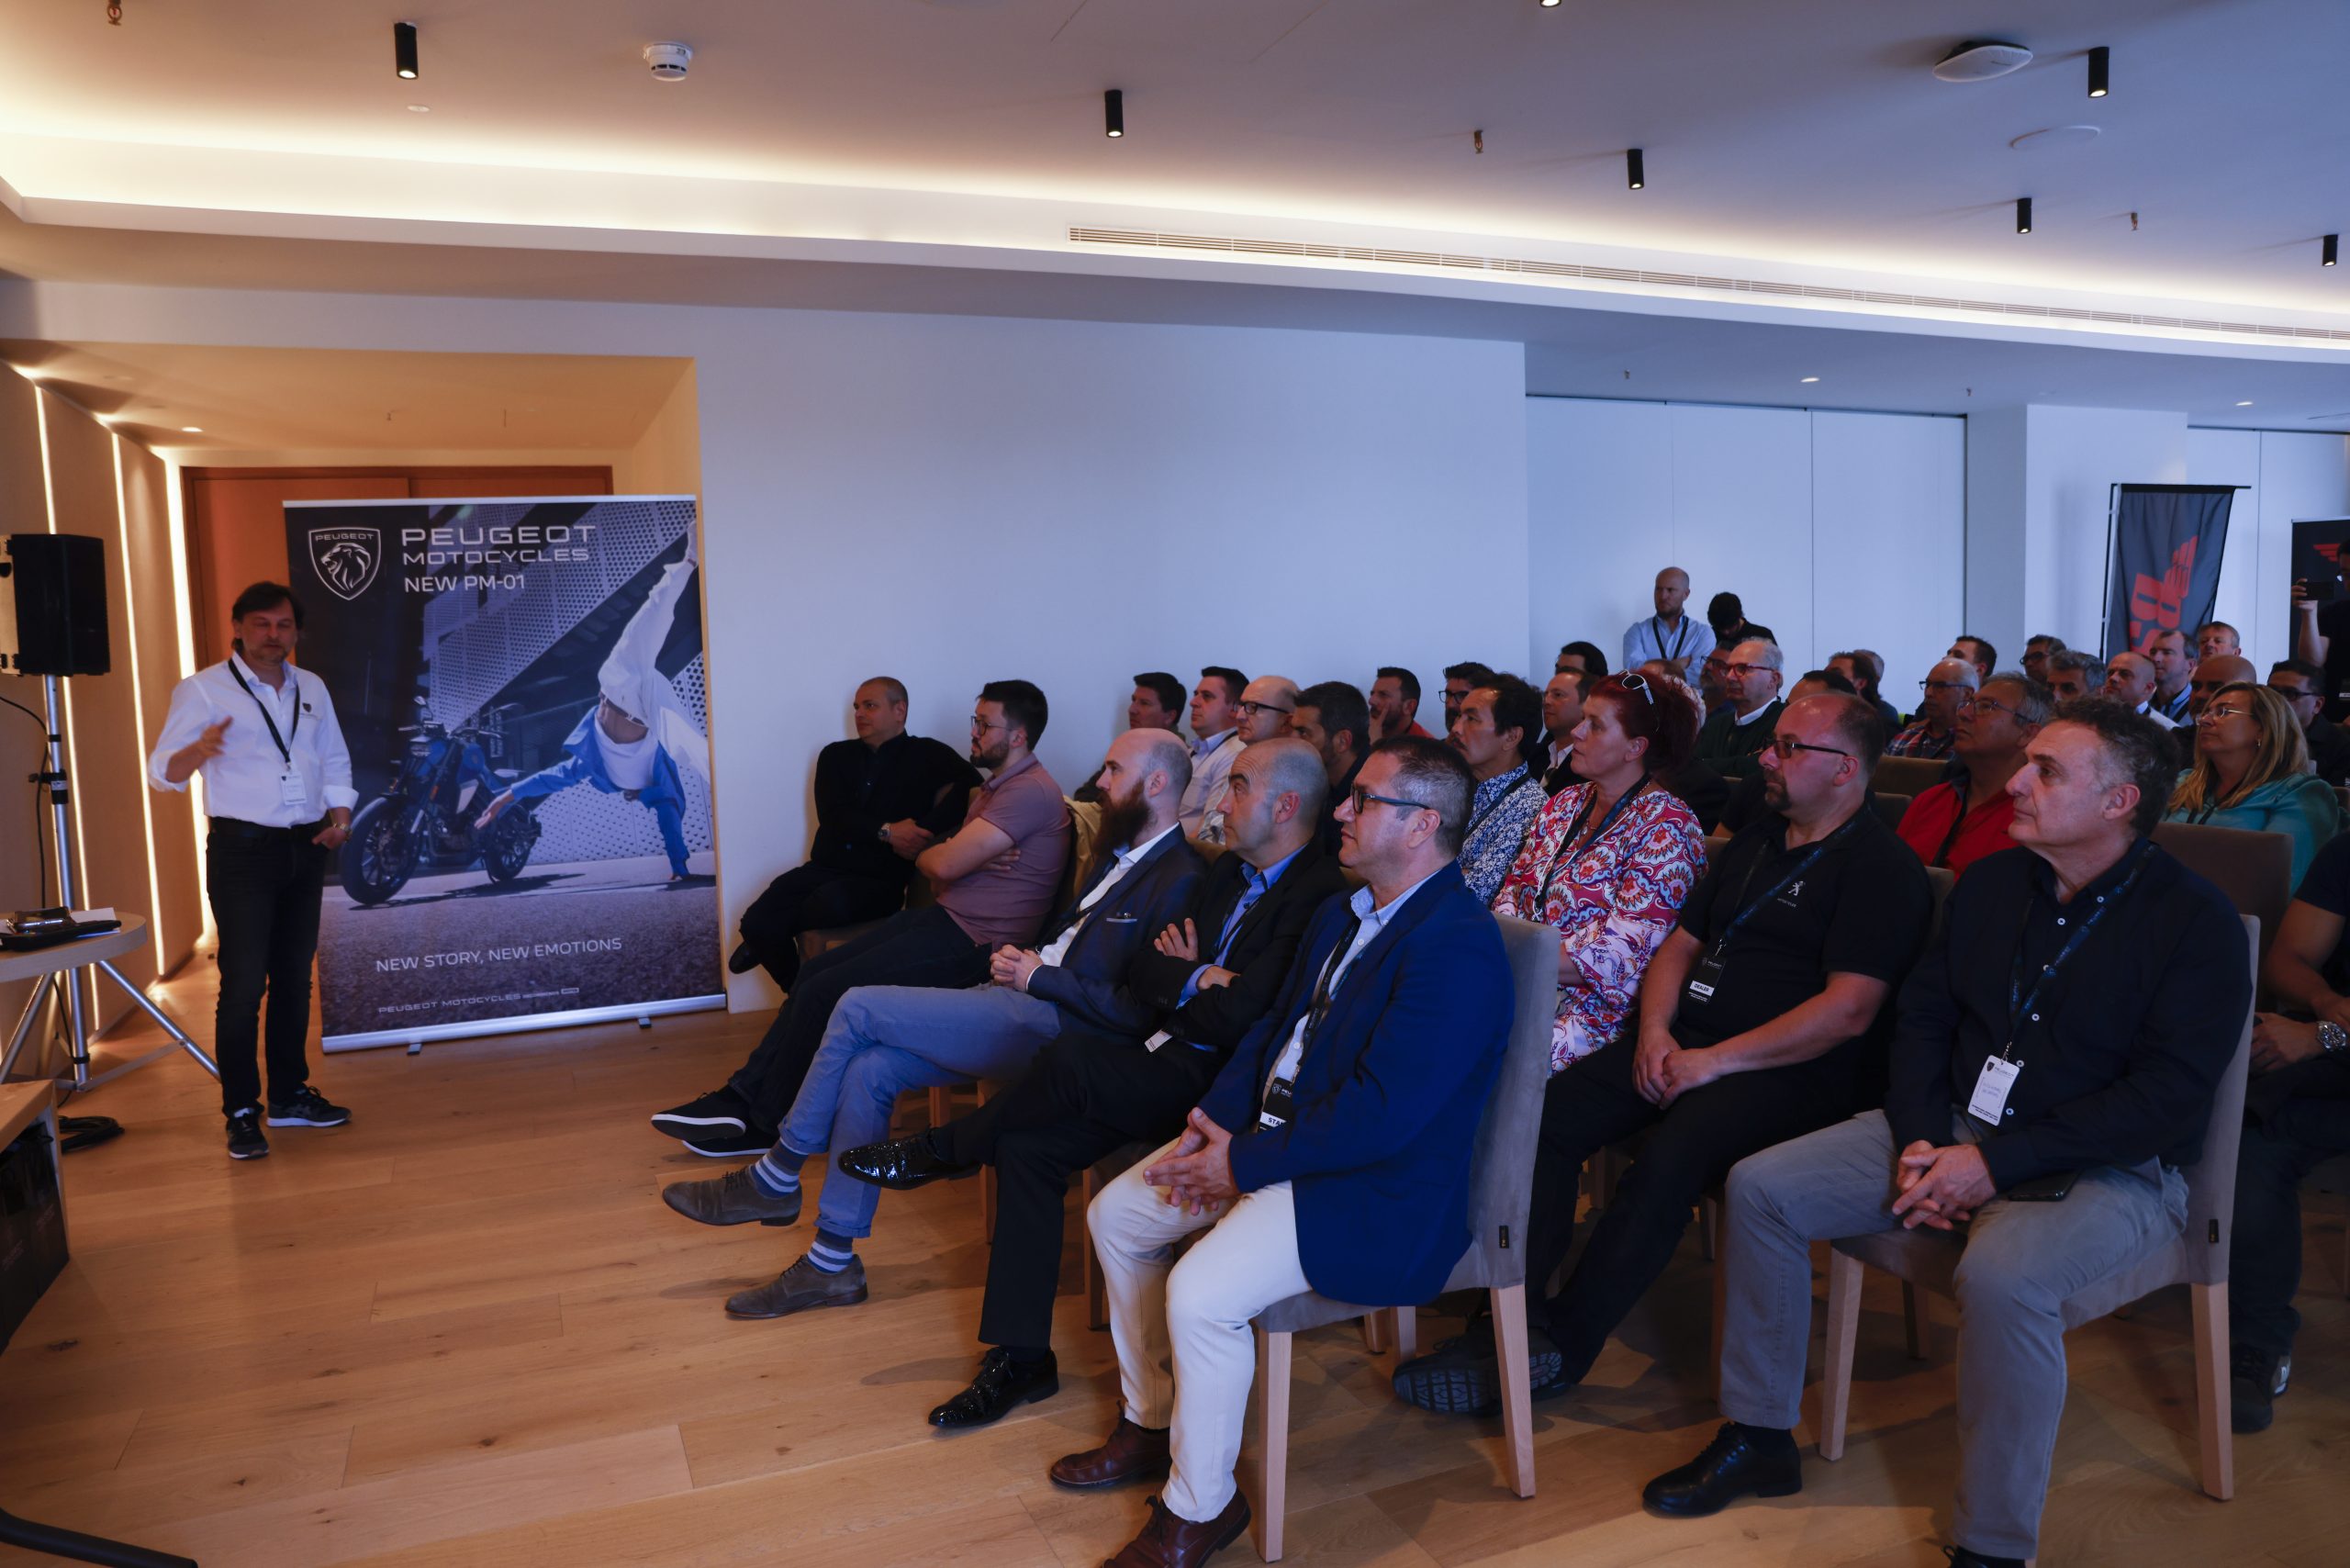 Presentación a dealers de las ultimas novedades de Peugeot Motocycles: XP400 y PM-01